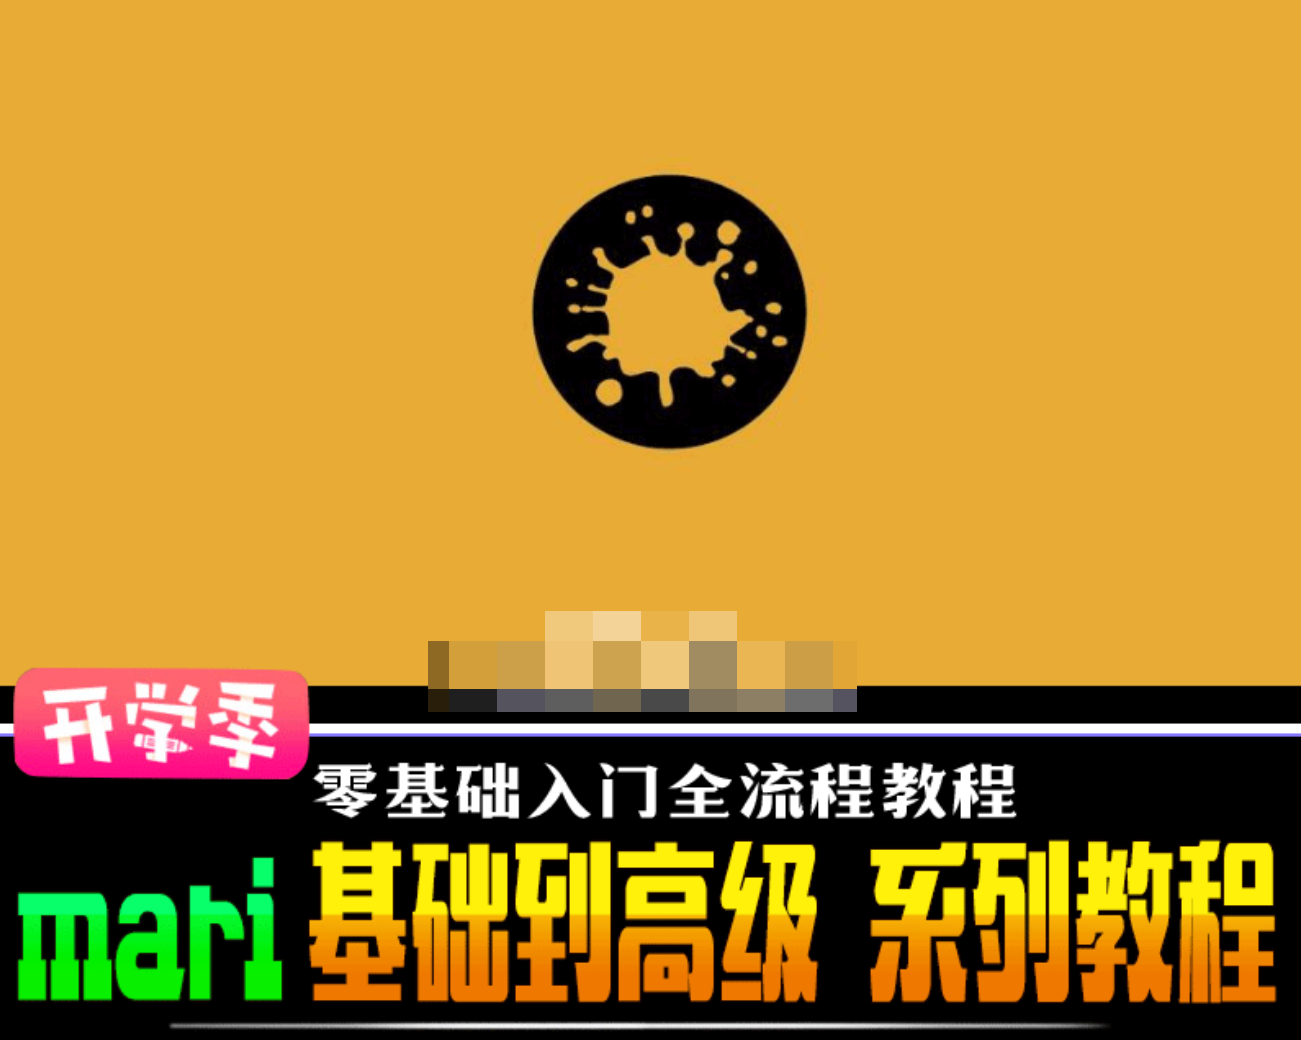 MARI影视贴图完全中文视频手册 mari软件基础到高级教程